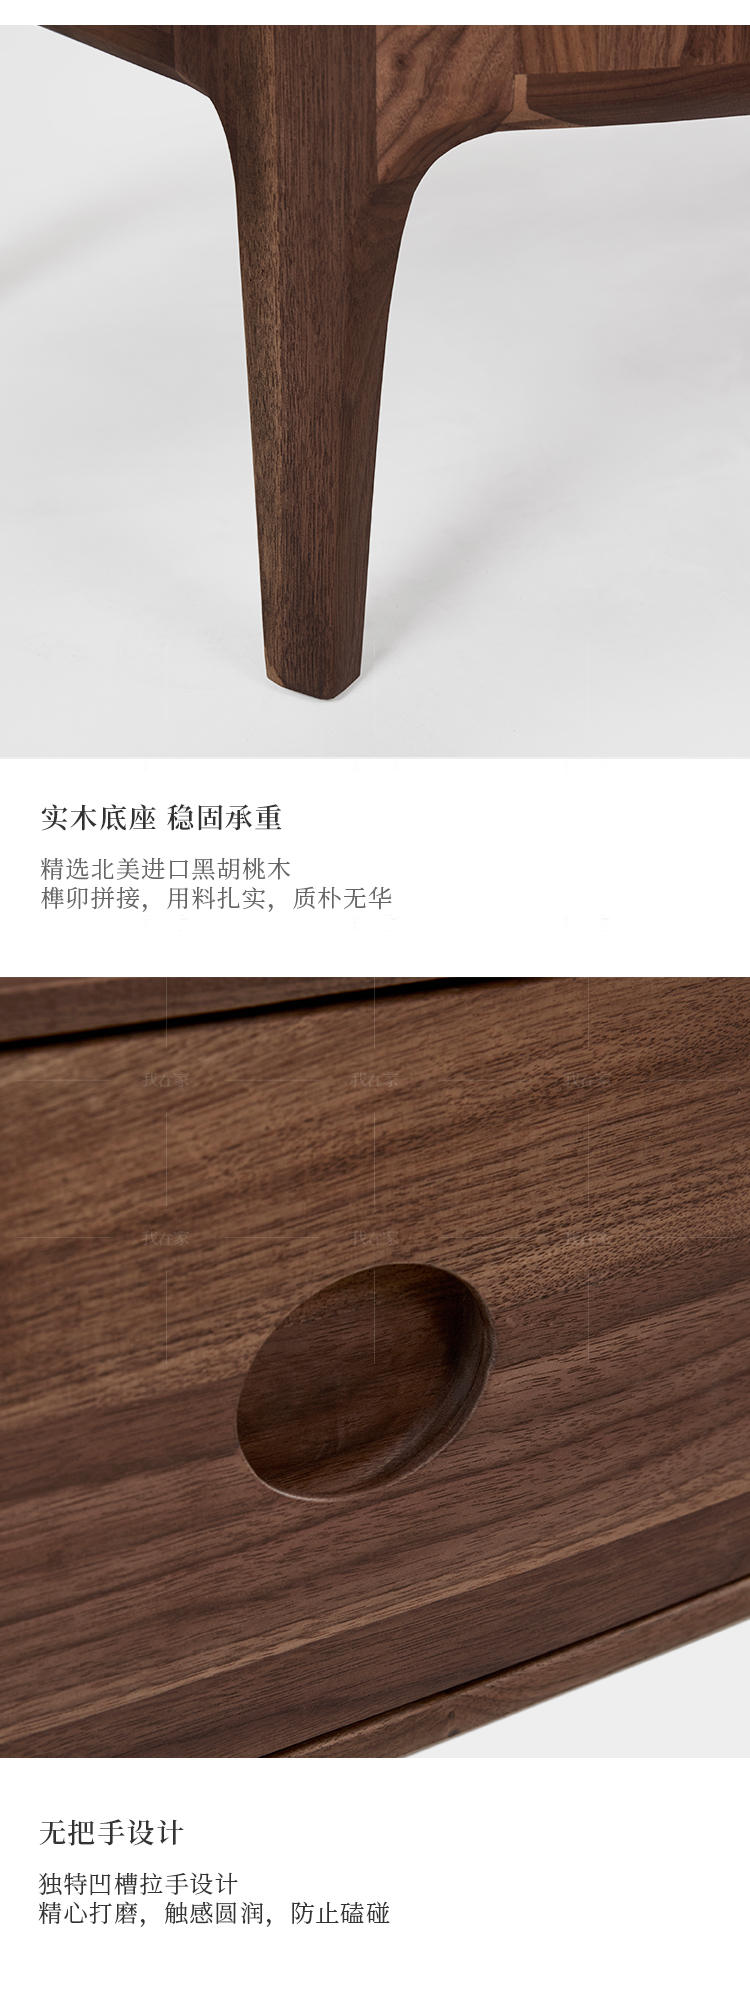 新中式风格小满茶几的家具详细介绍